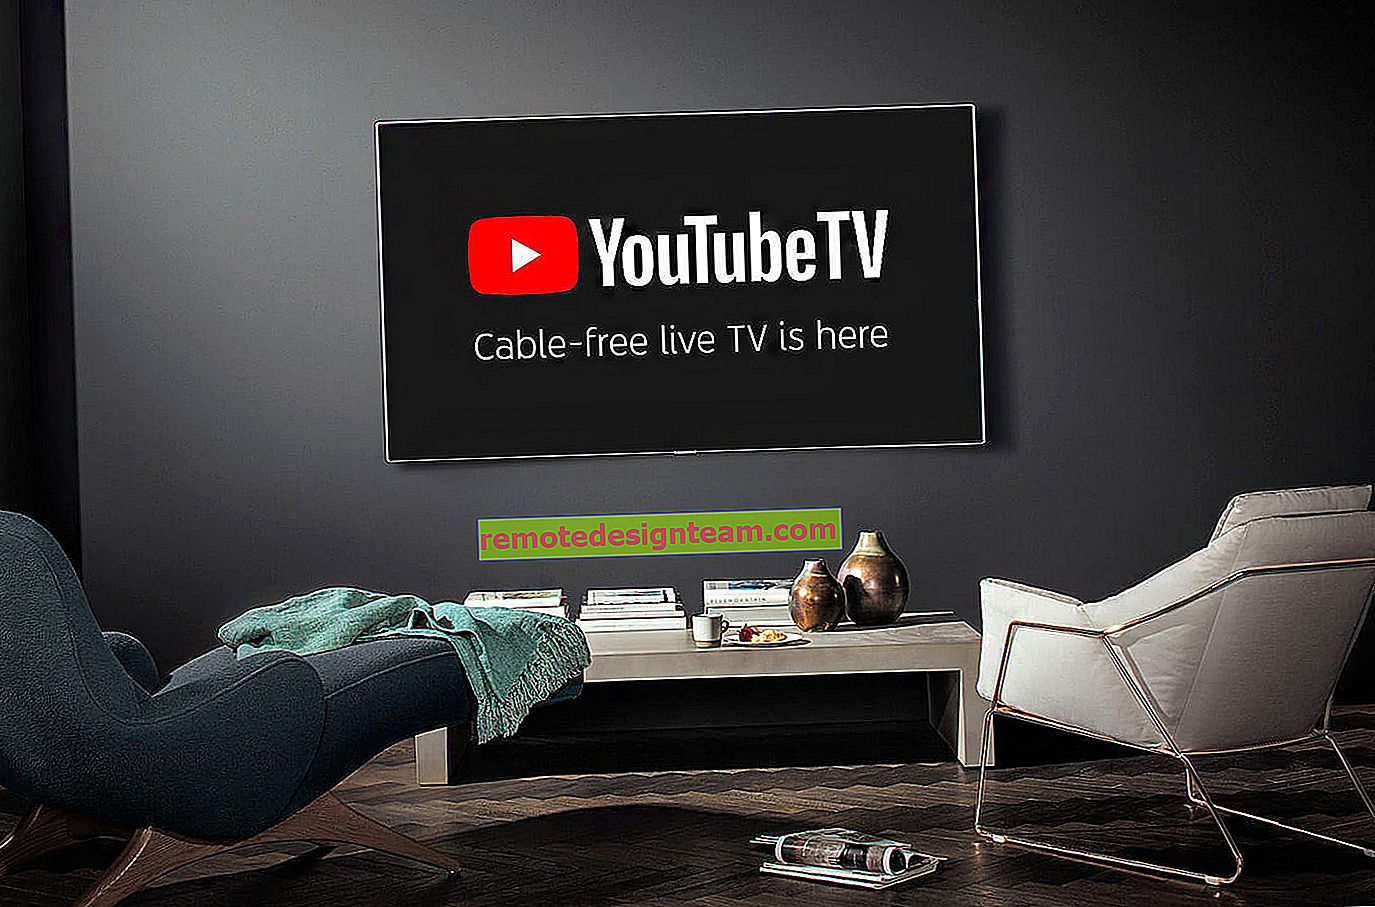 จะดู YouTube บนทีวีได้อย่างไร?